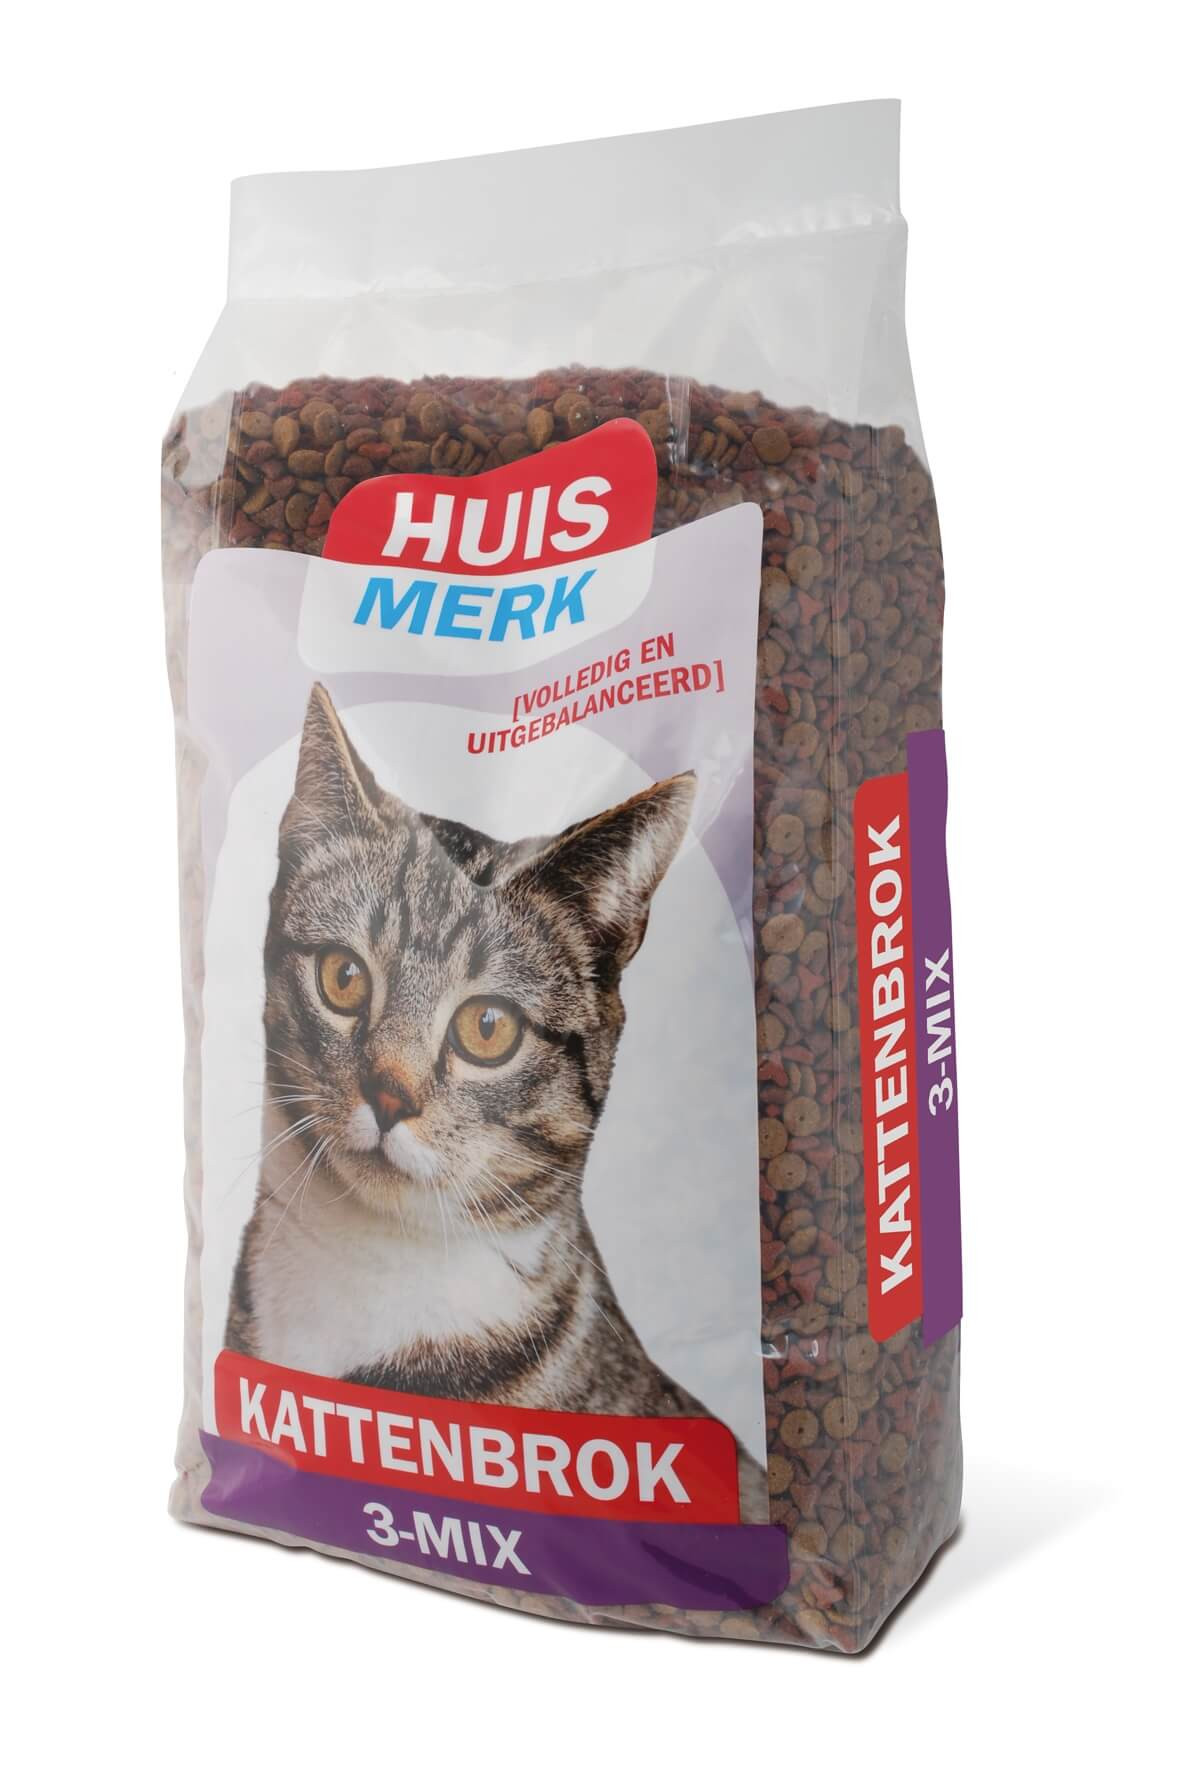 Huismerk Krokant Kattenbrok 3-Mix 10kg € 21.95